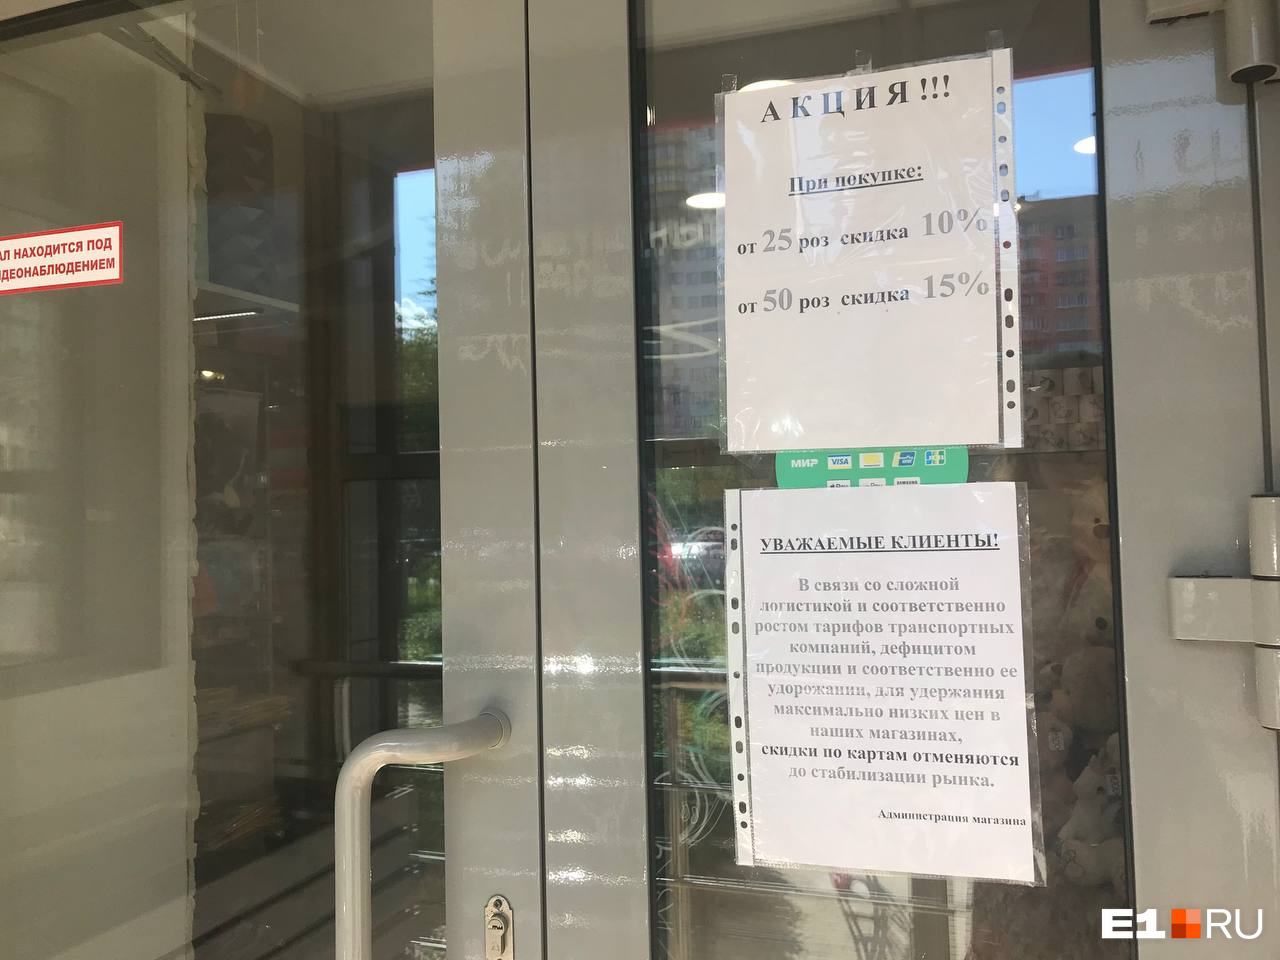 Вот такое объявление об отмене дисконтных карт появилось на входах в магазины сети «Красная орхидея»